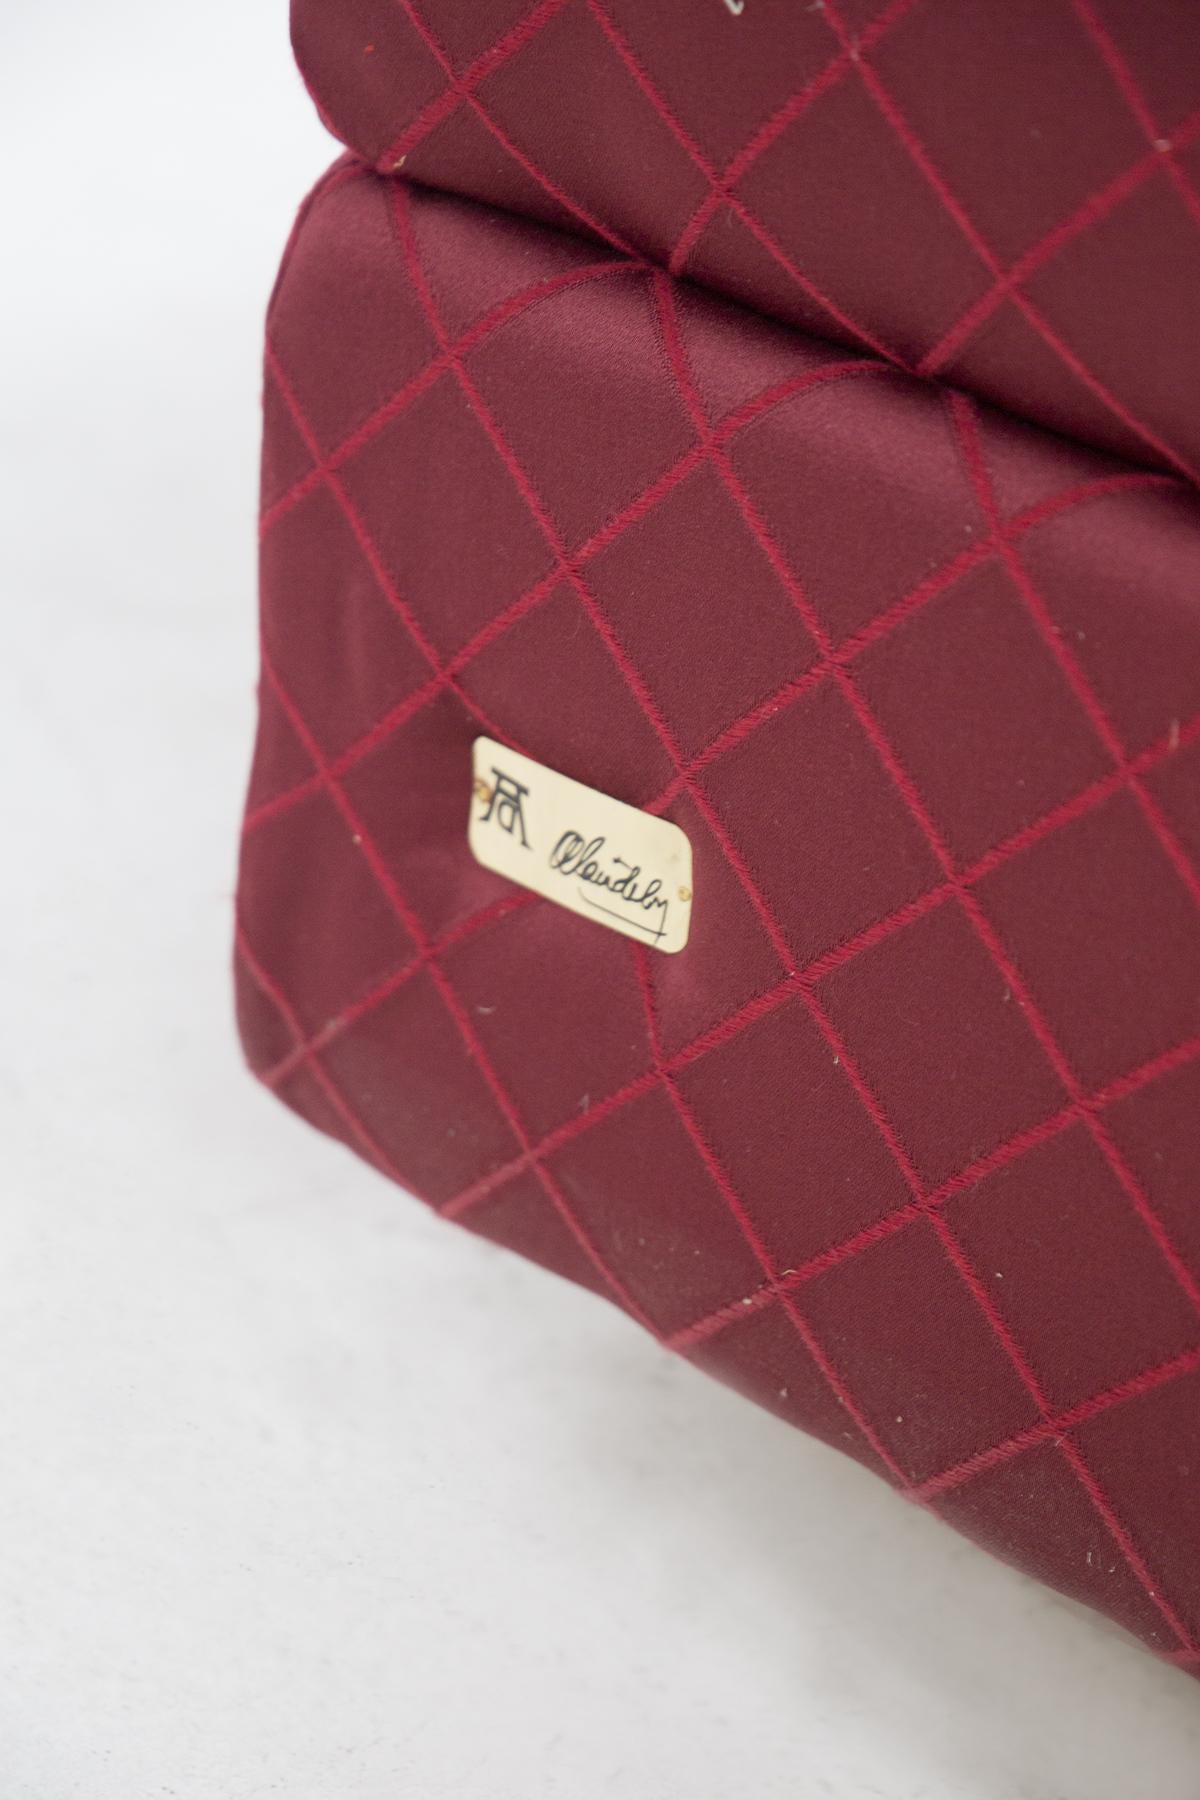 Alain Delon Vintage “Salon” Red Armchairs, Original Label For Sale 1